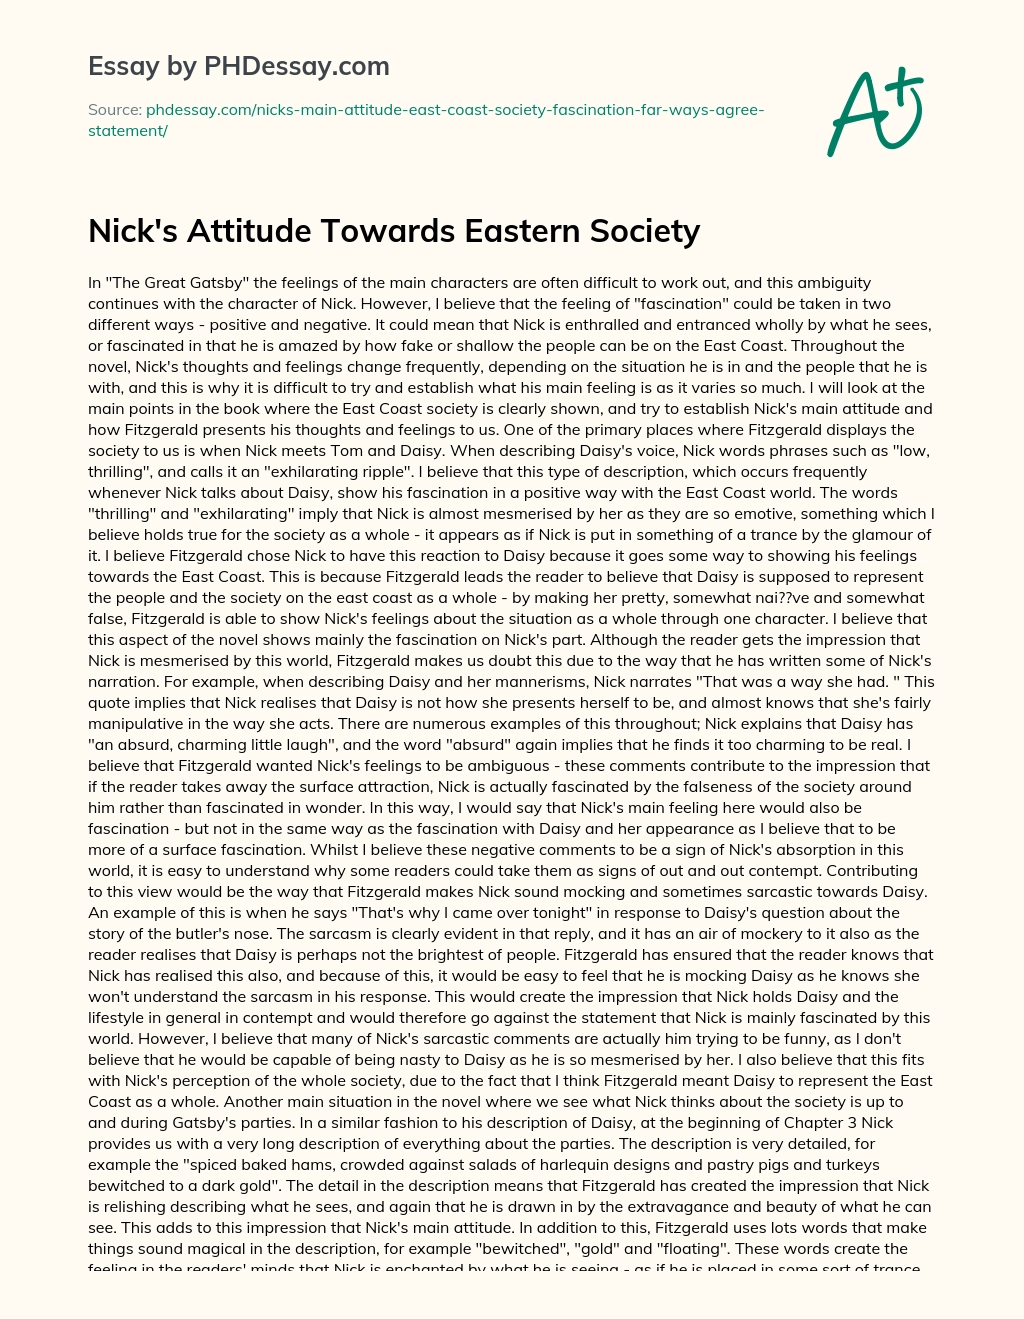 Nick’s Attitude Towards Eastern Society essay